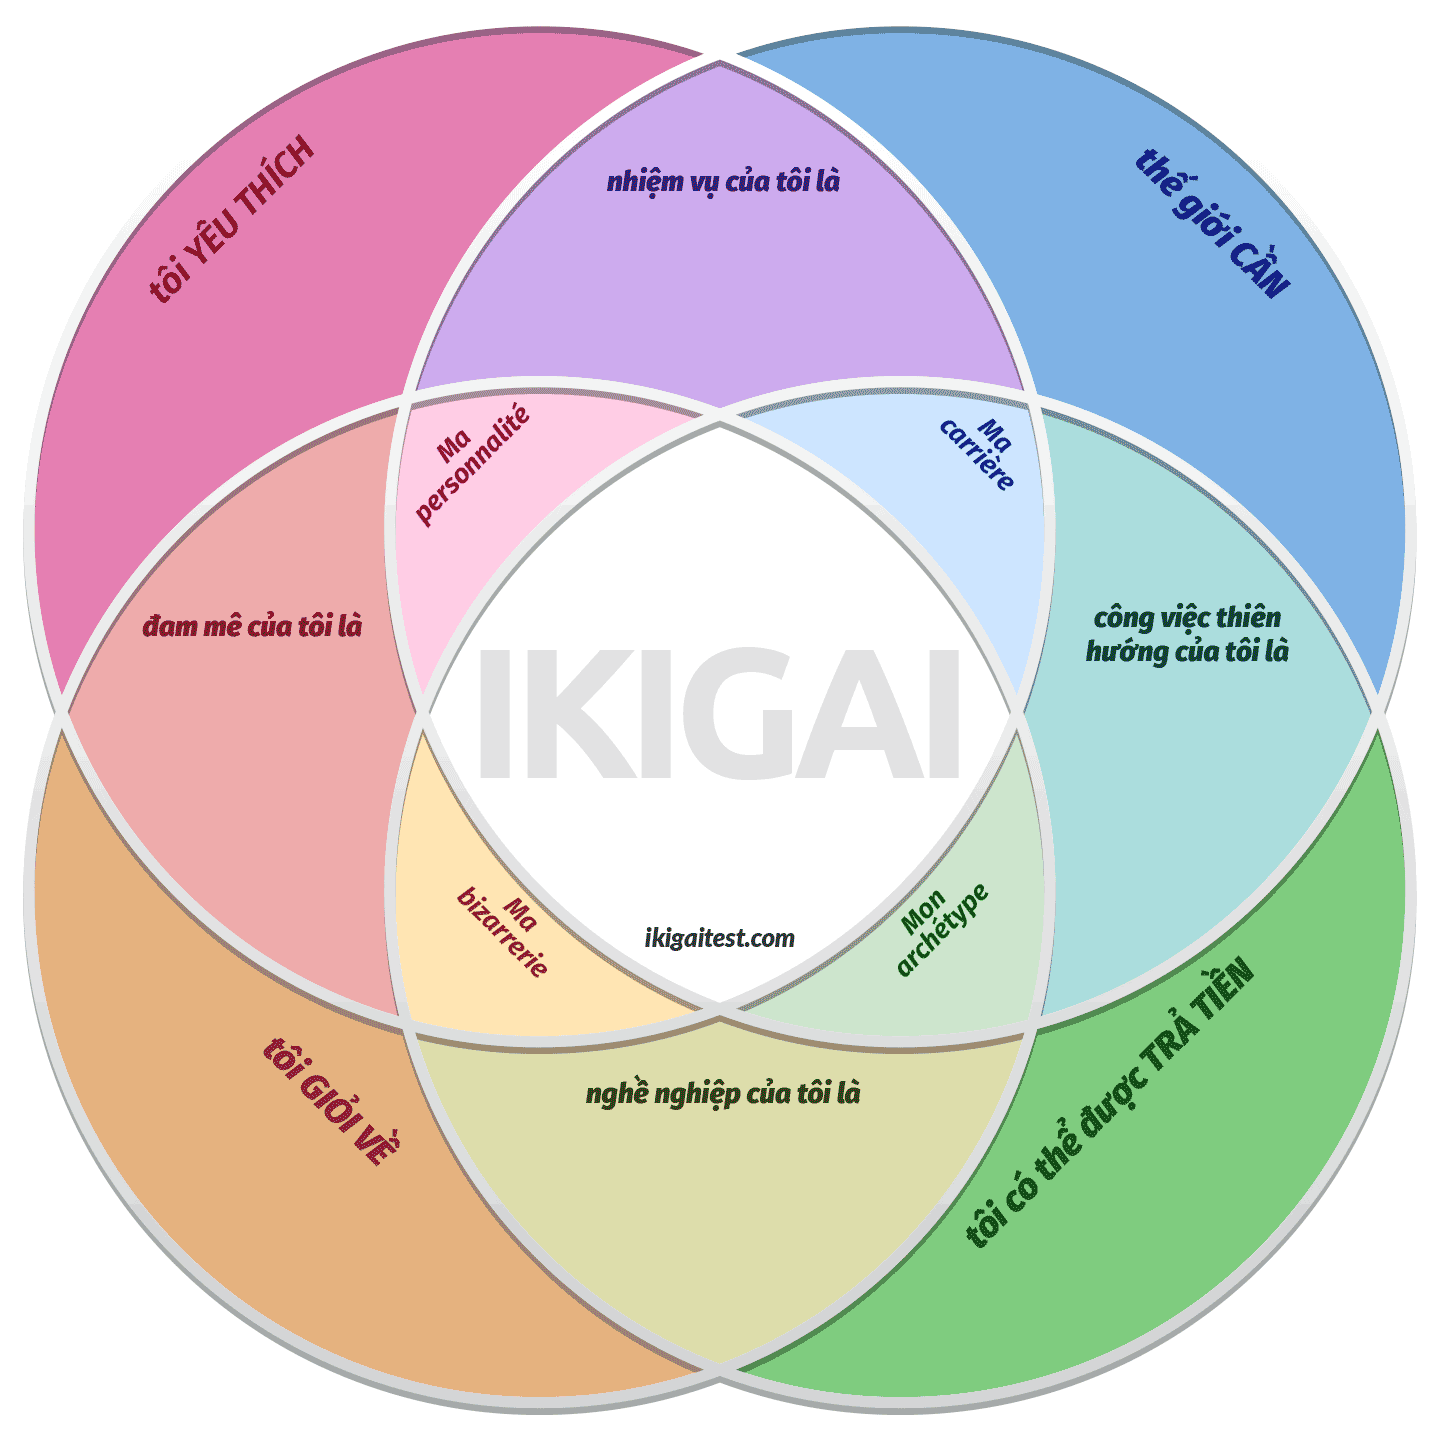 Tải xuống biểu đồ mẫu sơ đồ ikigai miễn phí